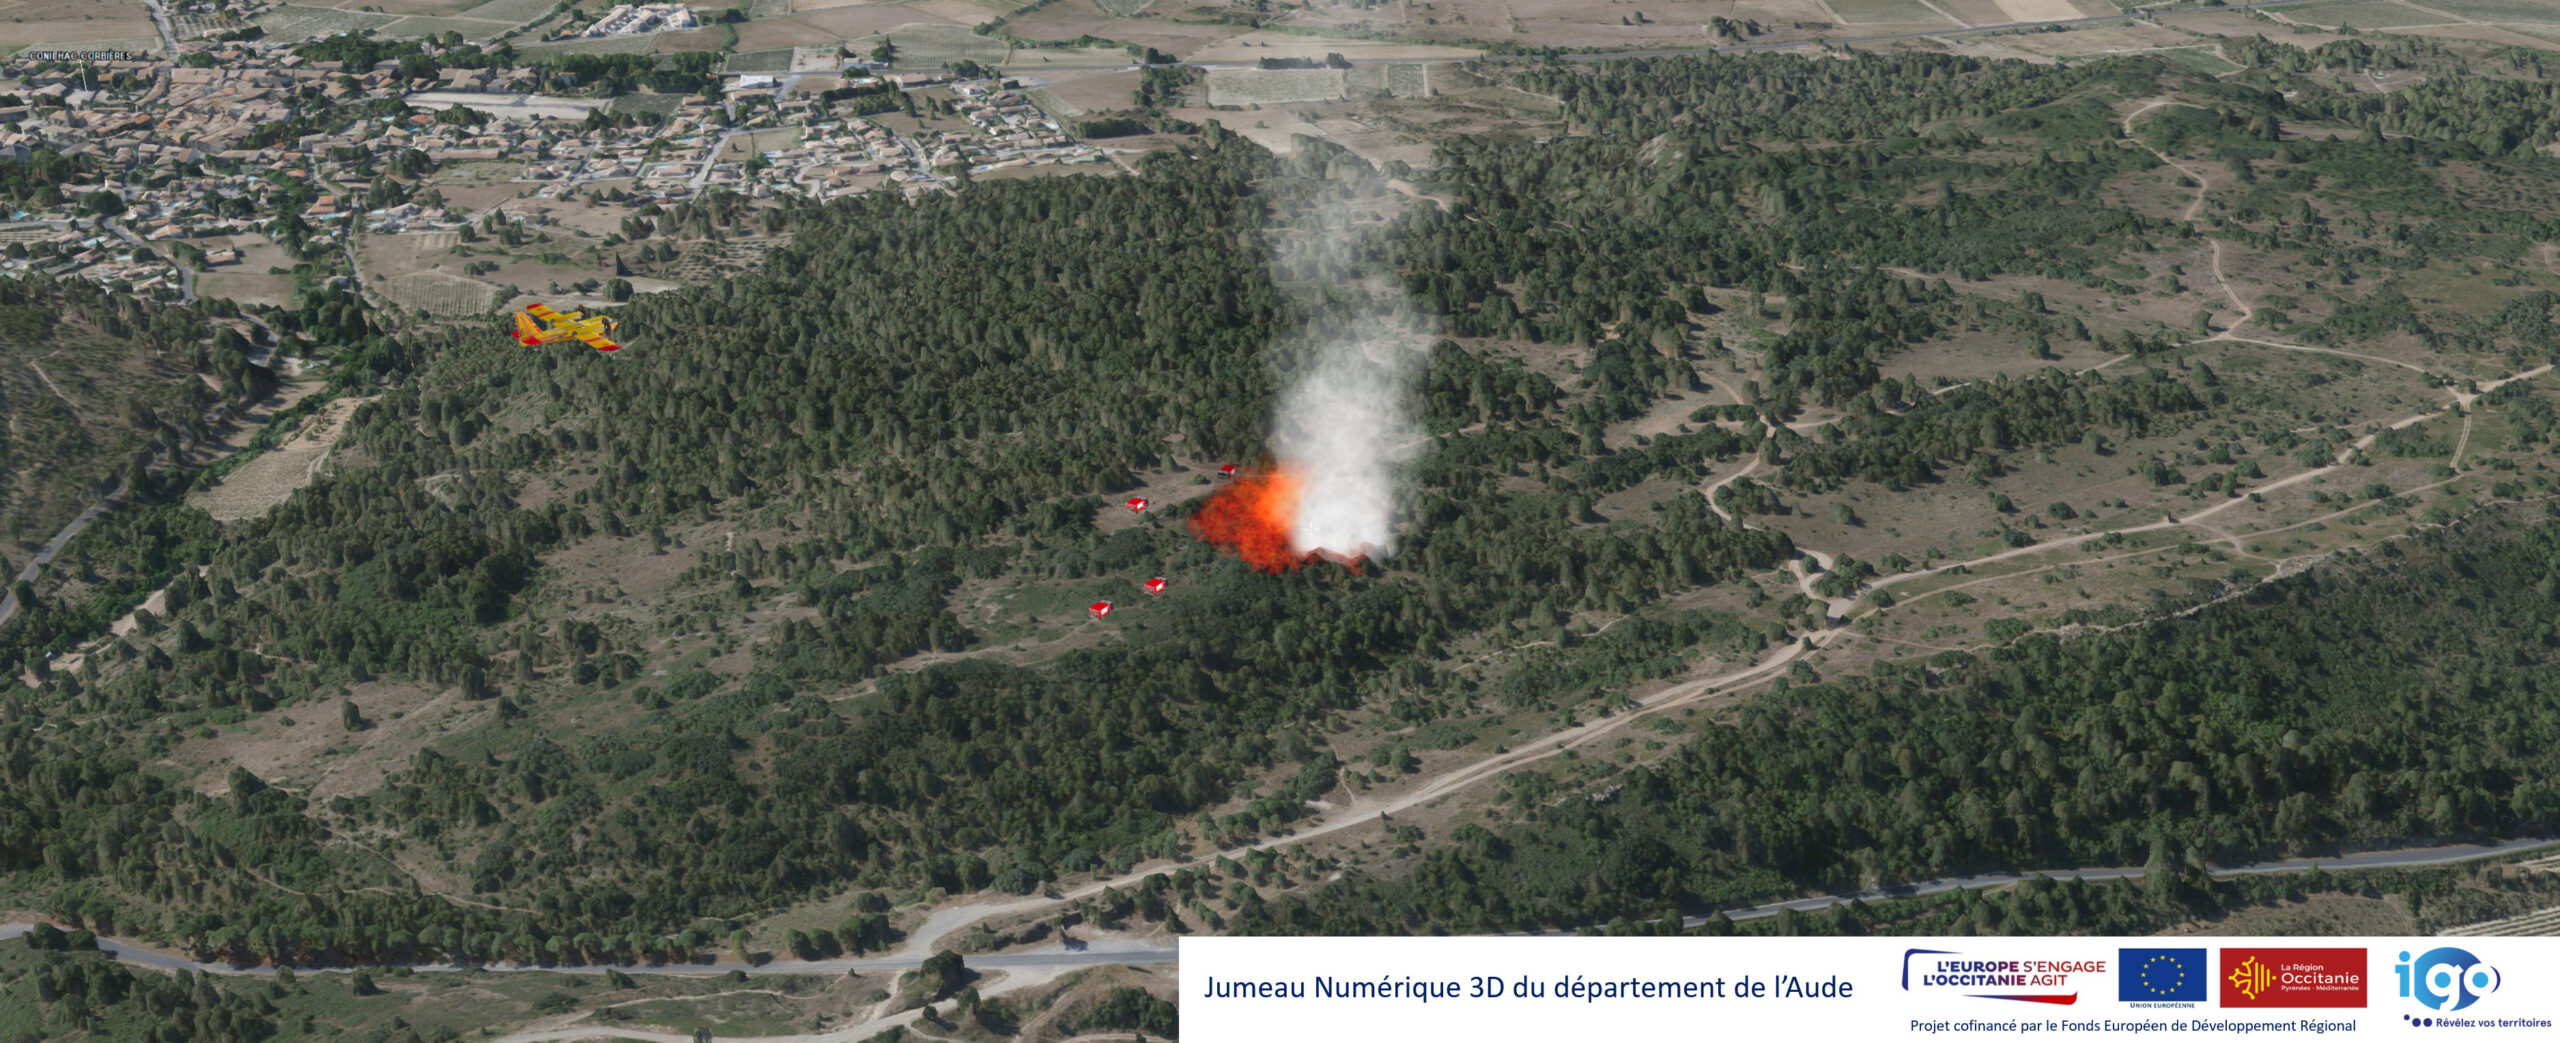 Jumeau numérique 3D du département de l'Aude. Vue aérienne d'une zone boisée avec un foyer d'incendie à proximité d'une ville. Des engins du SDIS sont sur place et un avion Canadair survole la zone.